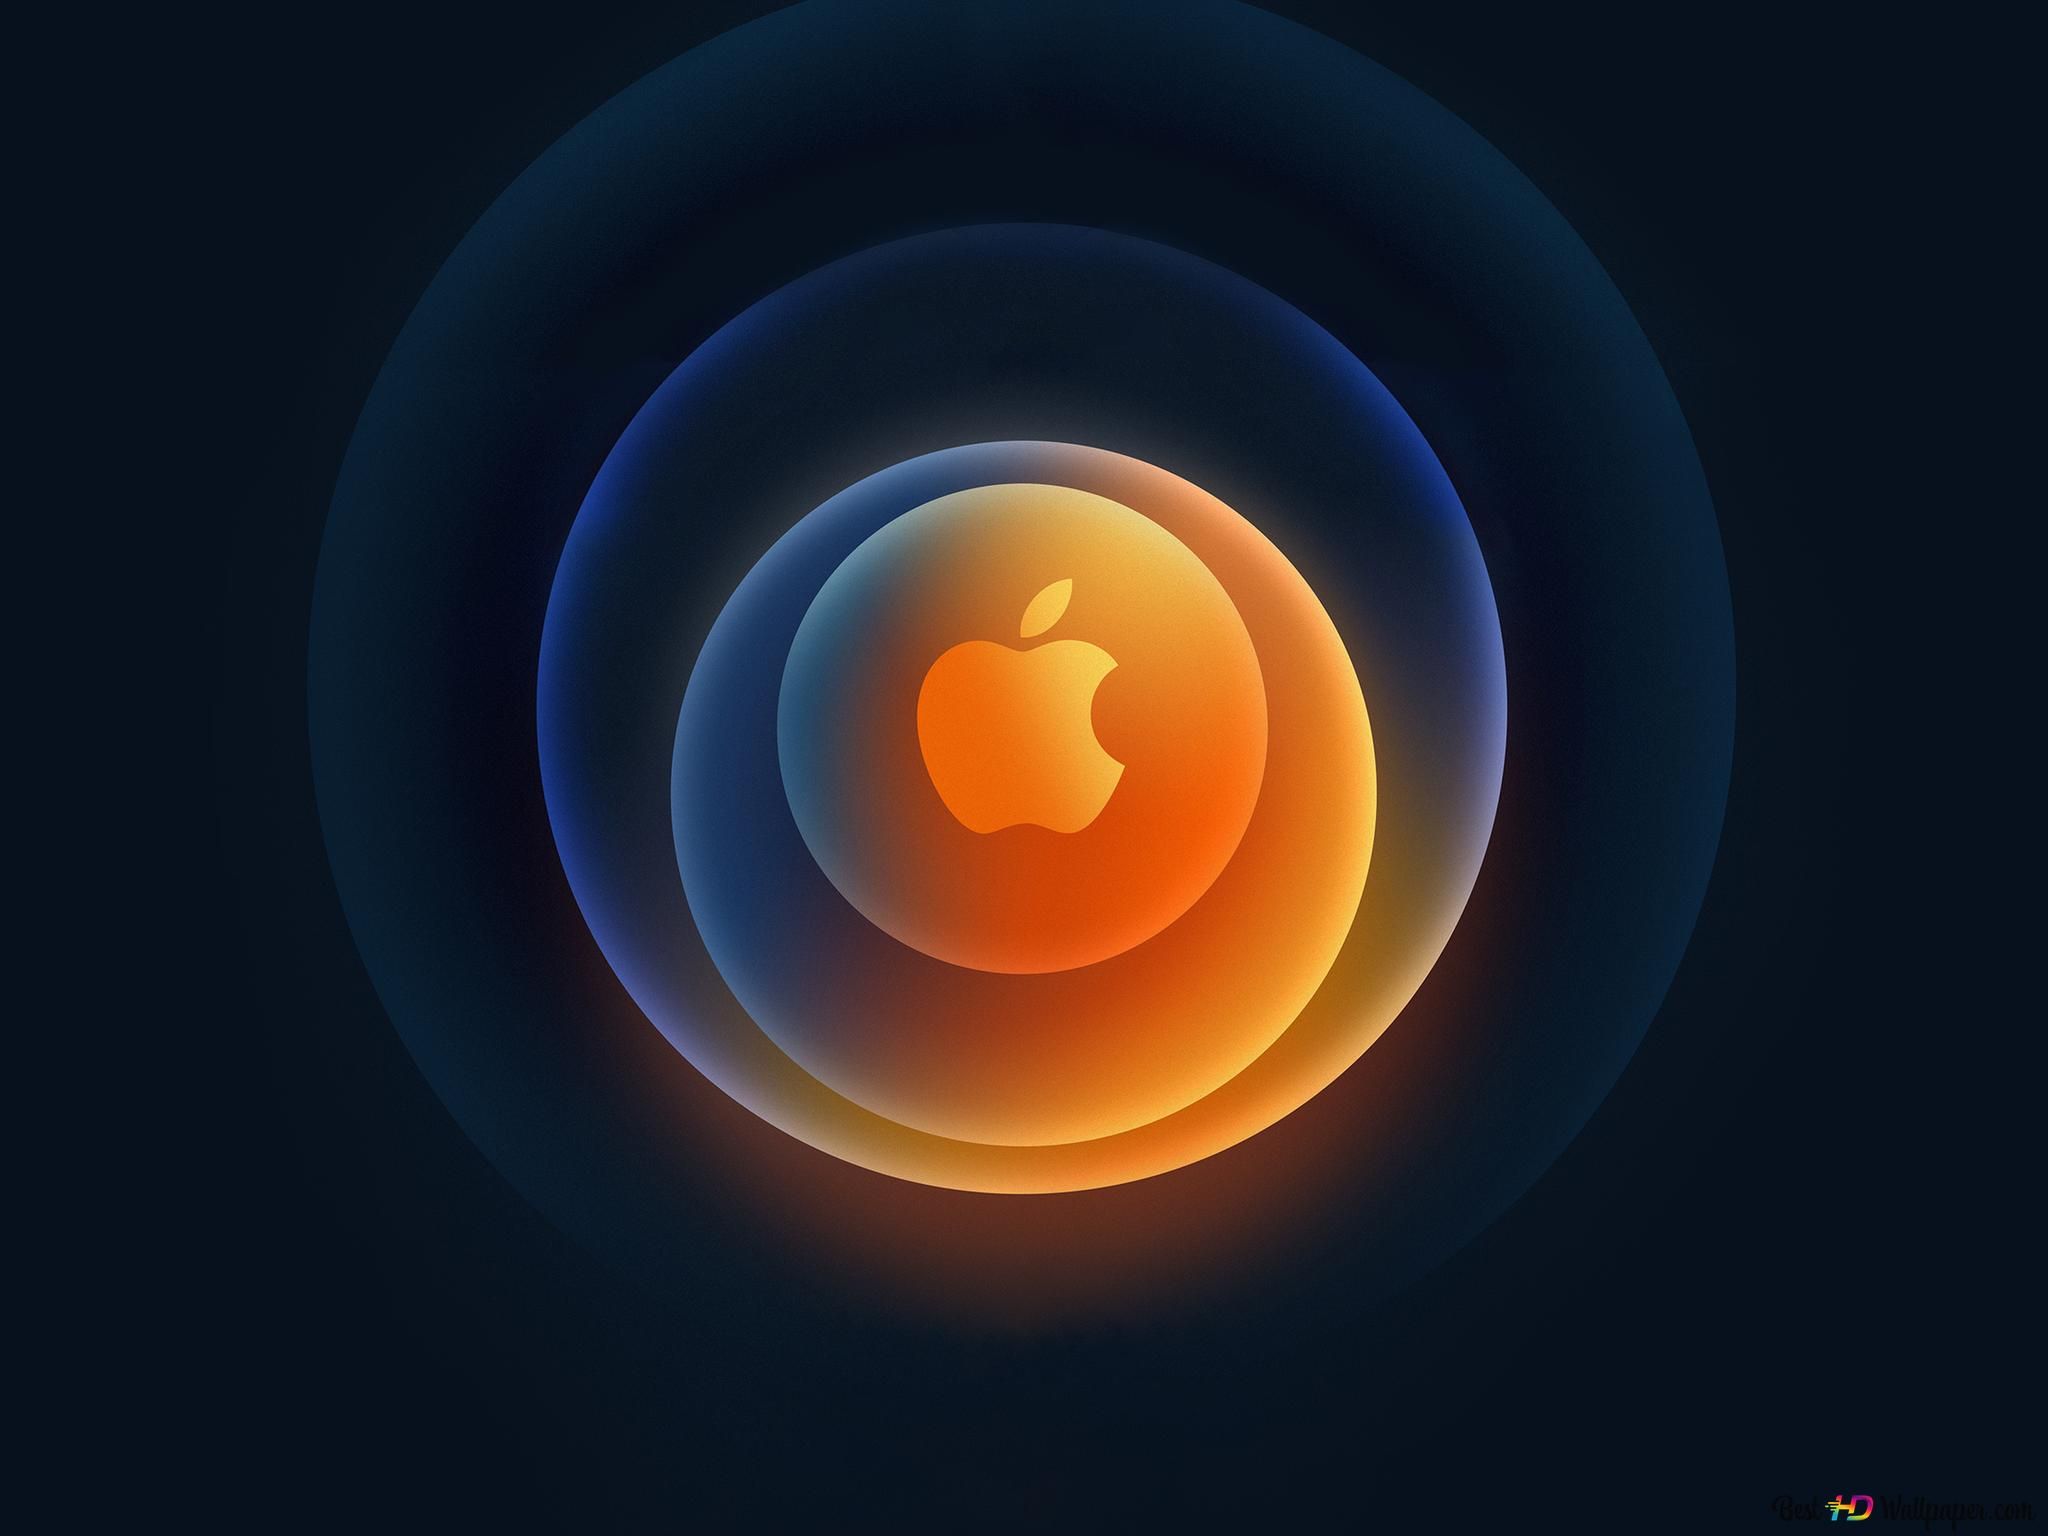  Farbiges Hintergrundbild 2048x1536. Farbiges Kreisförmiges Apple Logo 4K Hintergrundbild Herunterladen